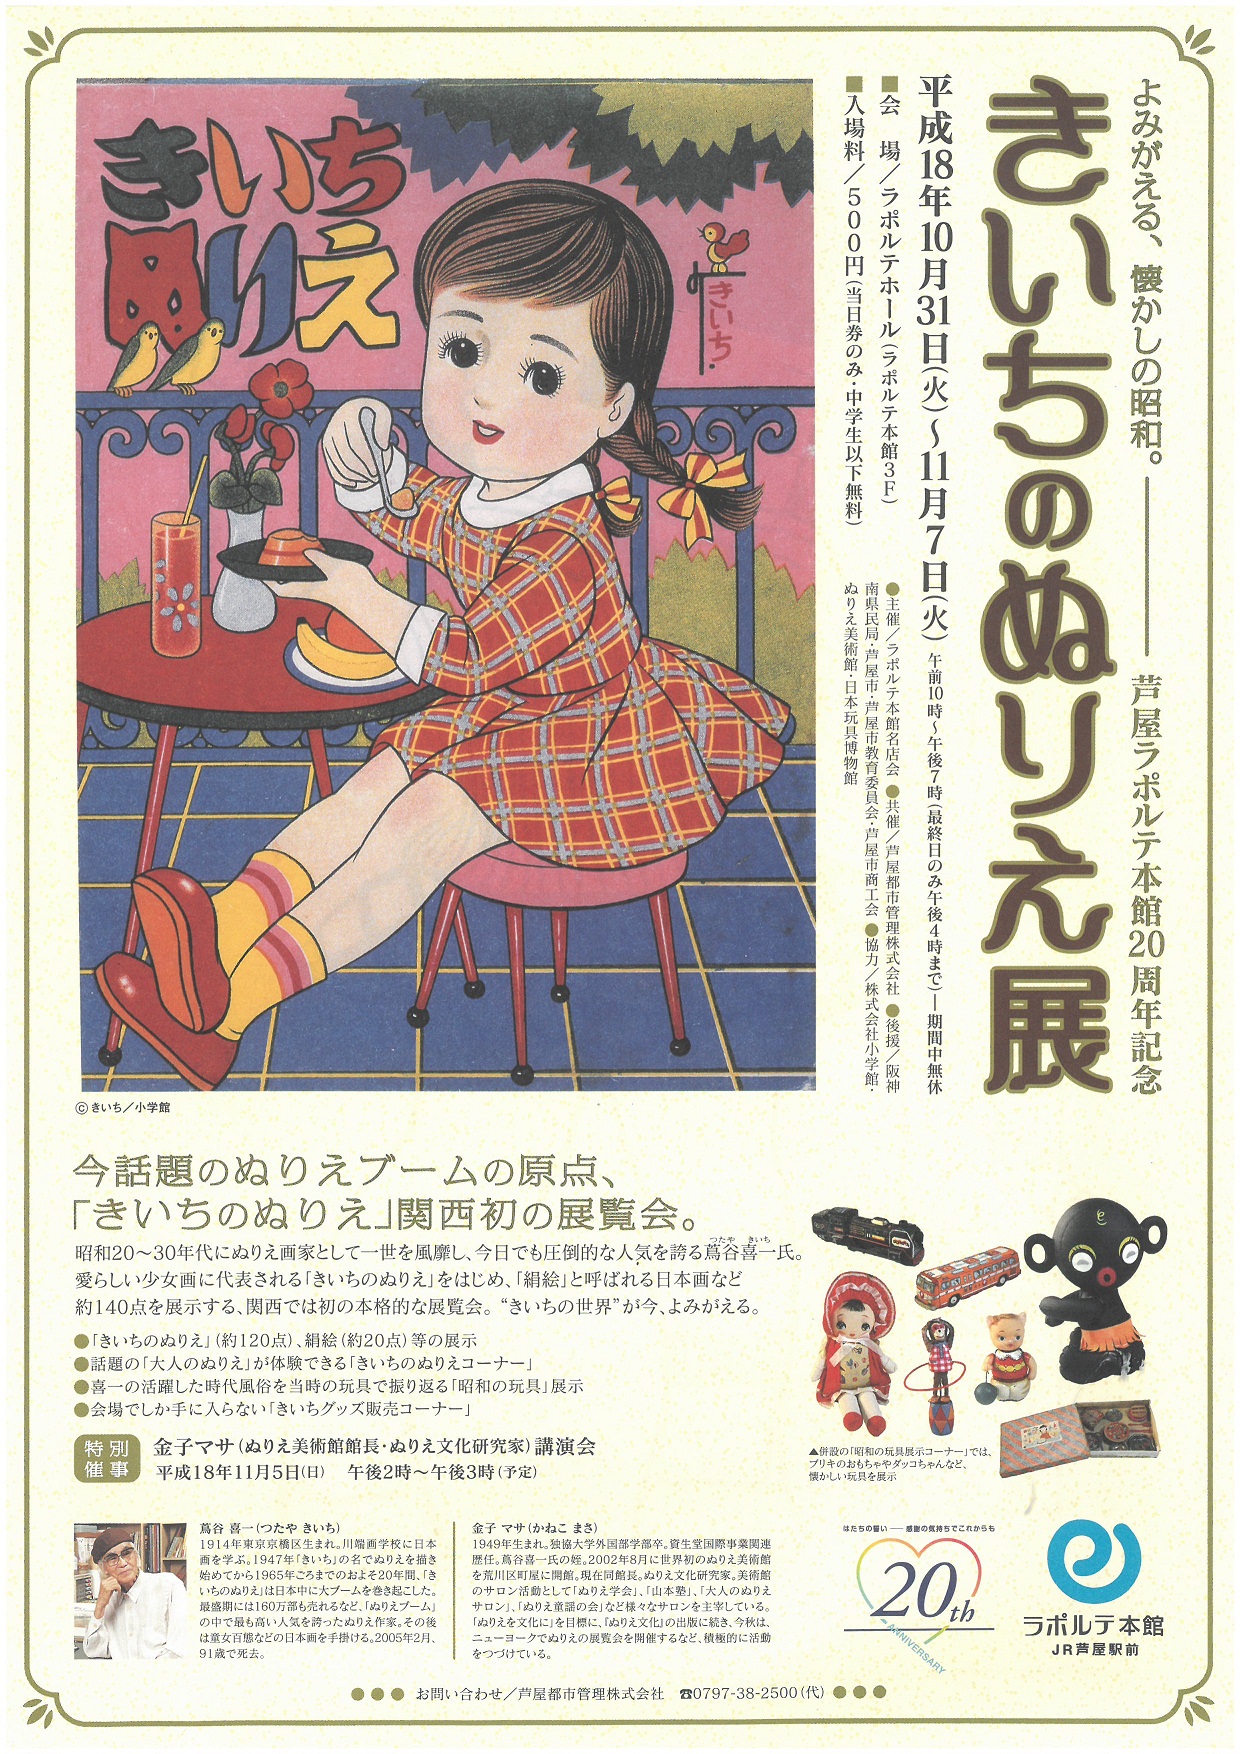 芦屋ラポルテ本館 きいちのぬりえ展 よみがえる 懐かしの昭和 日本玩具博物館